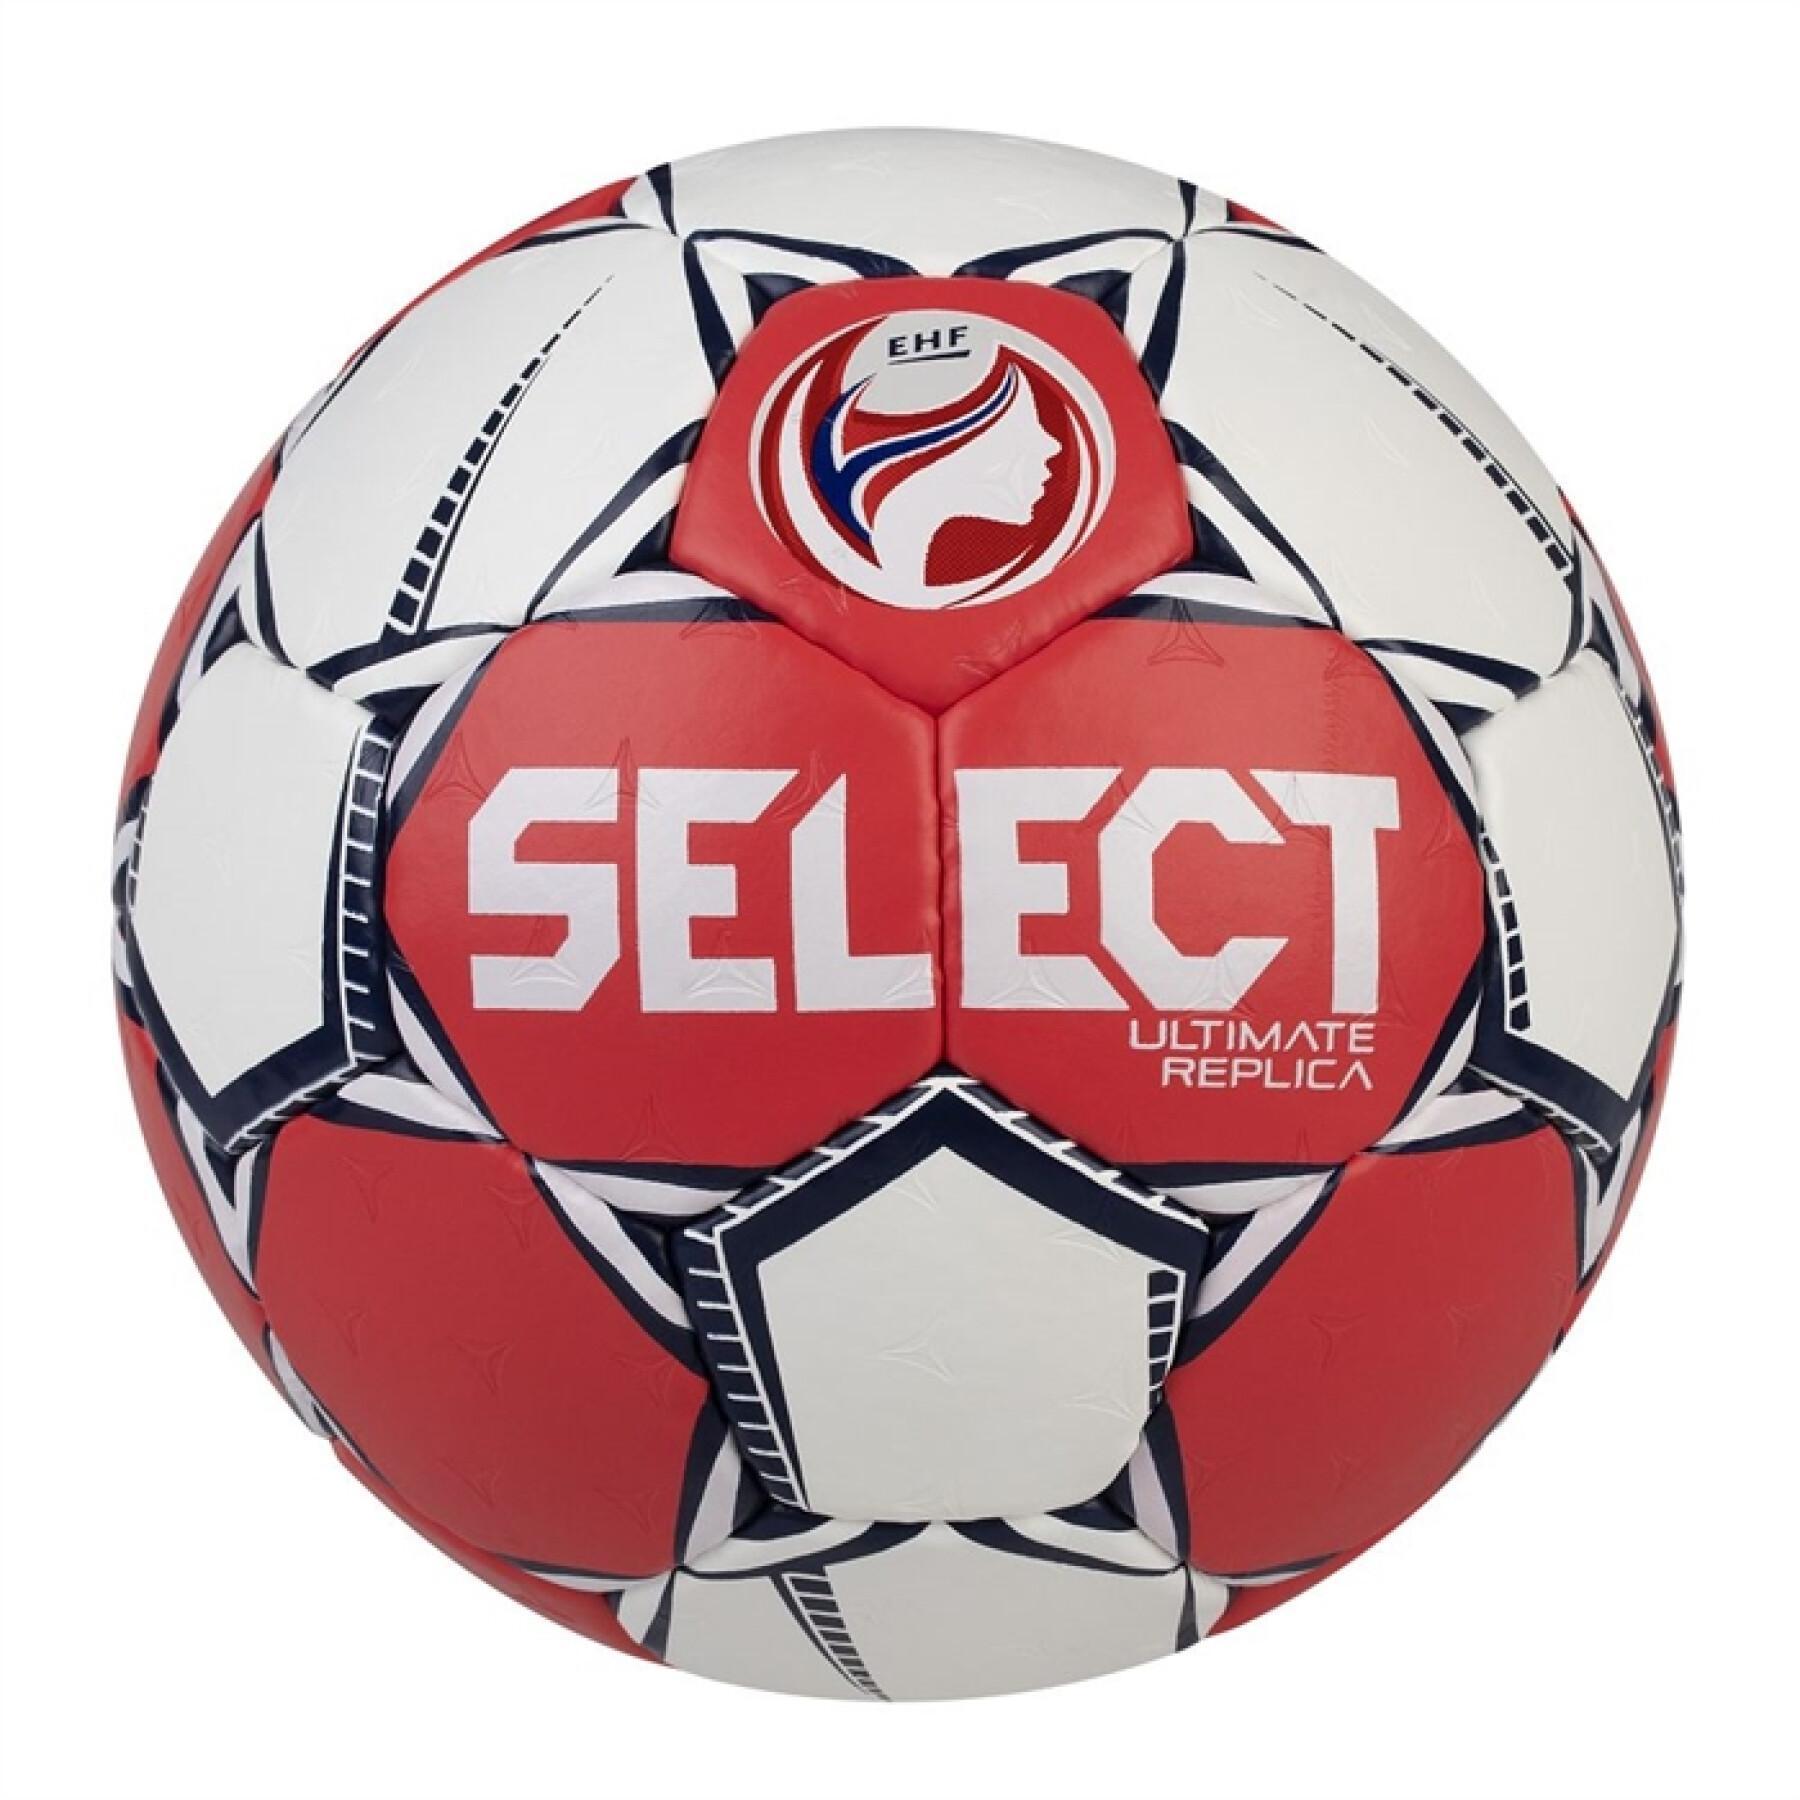 Balonmano Select Ultimate Replica EHF Euro 2020